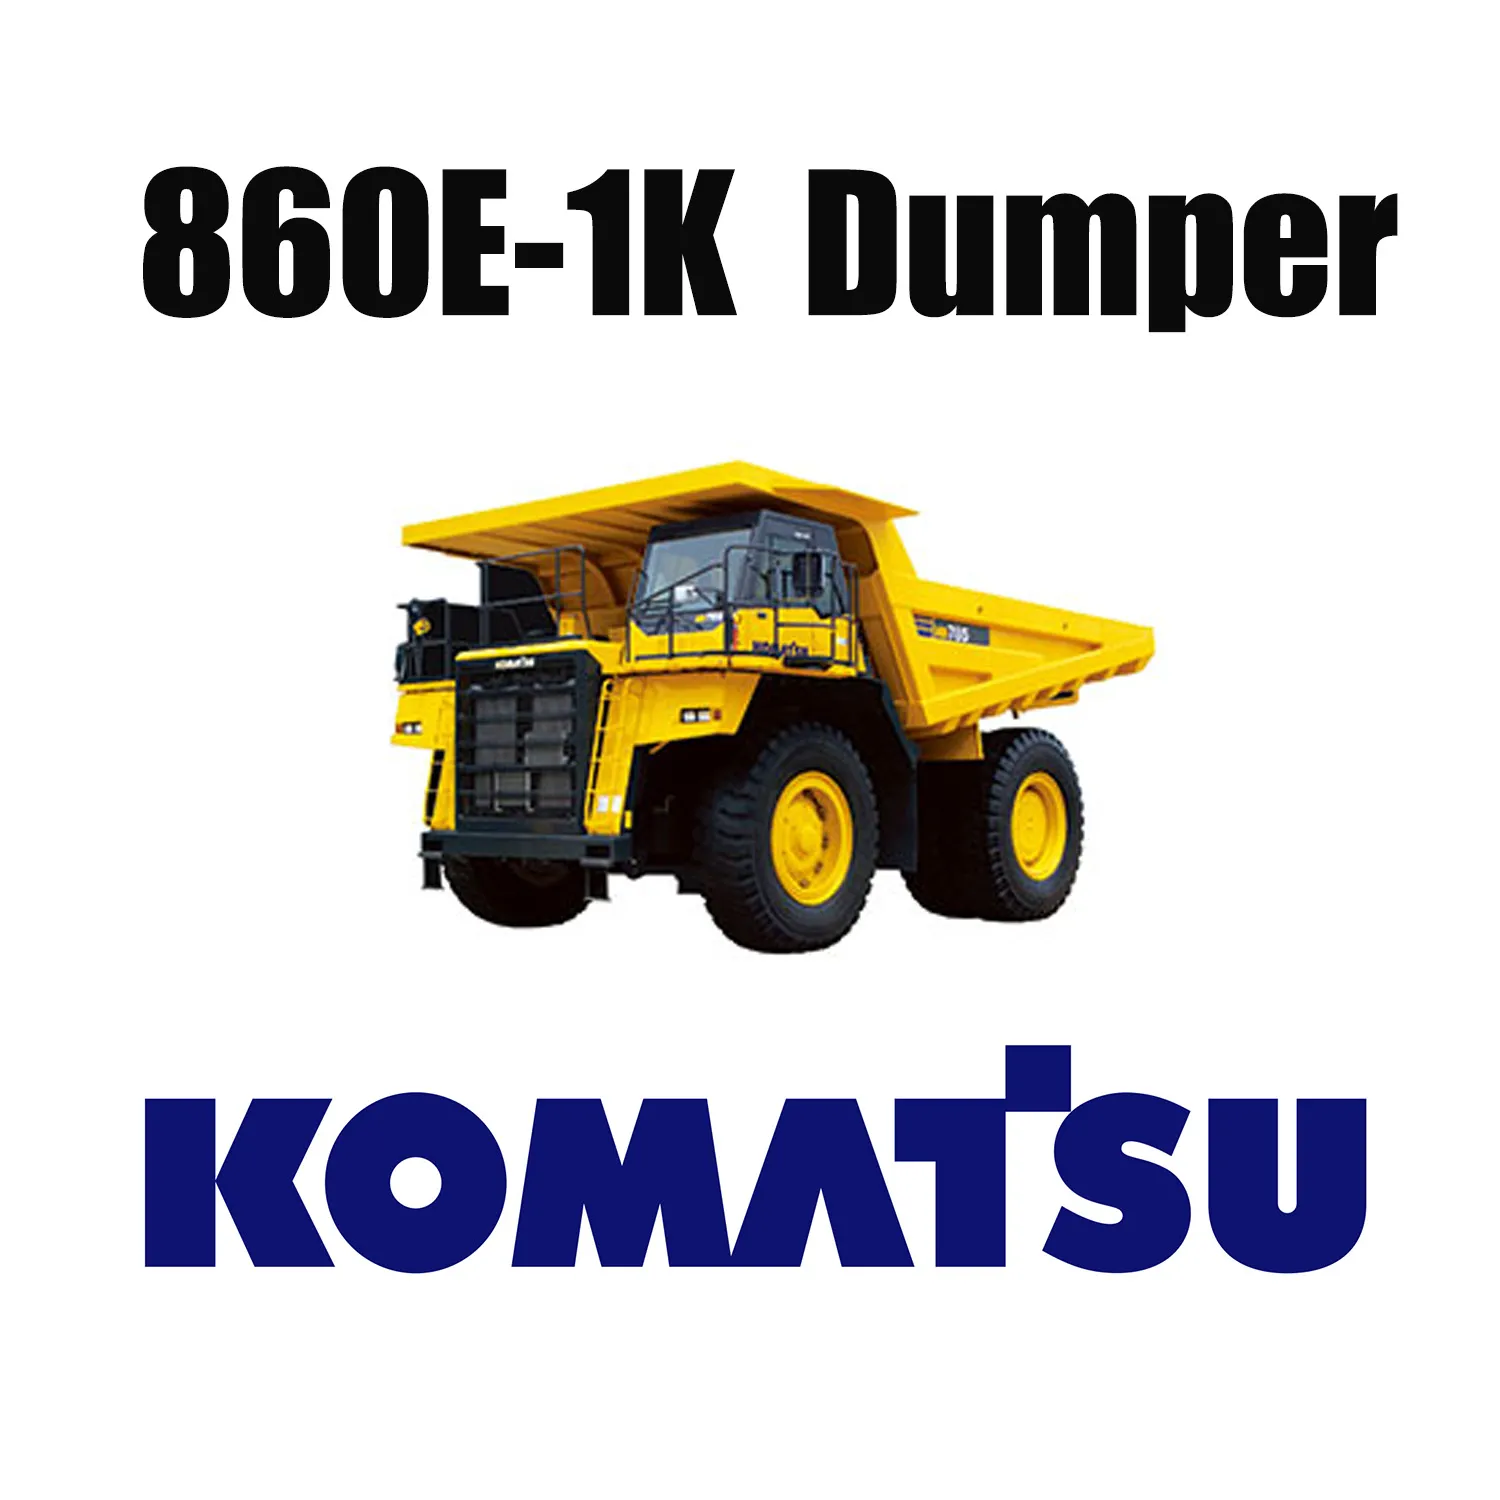 KOMATSU 860E-1K için Kömür madeninde kullanılan Dev 50/80R57 Off the Road Lastikleri